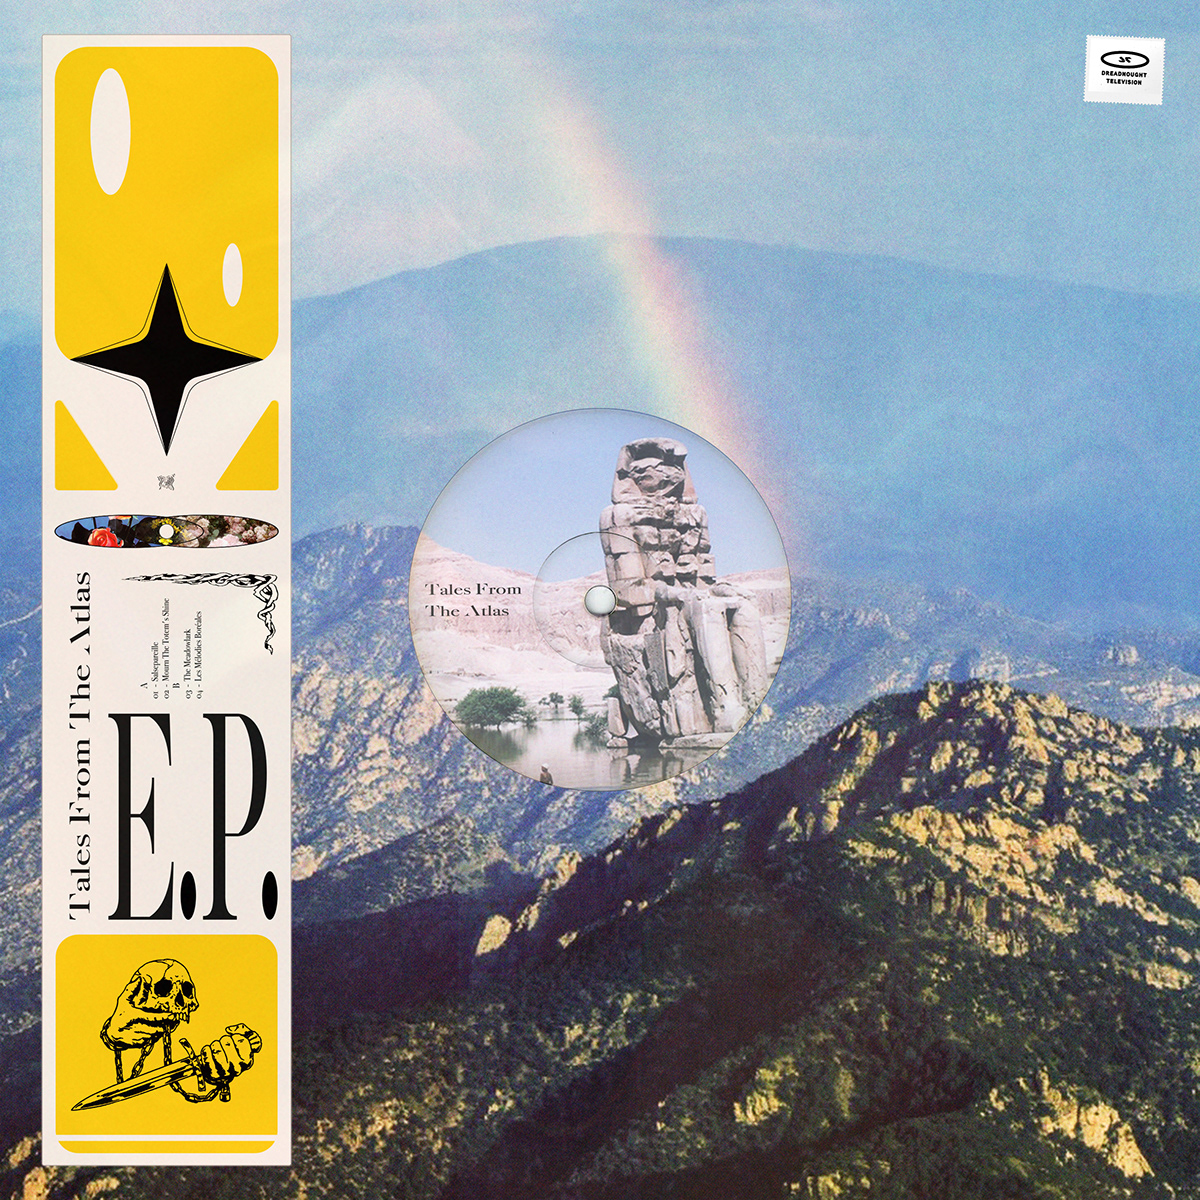 Album album cover artwork chillhop ep exodus Flowers graphic design  music vinyl